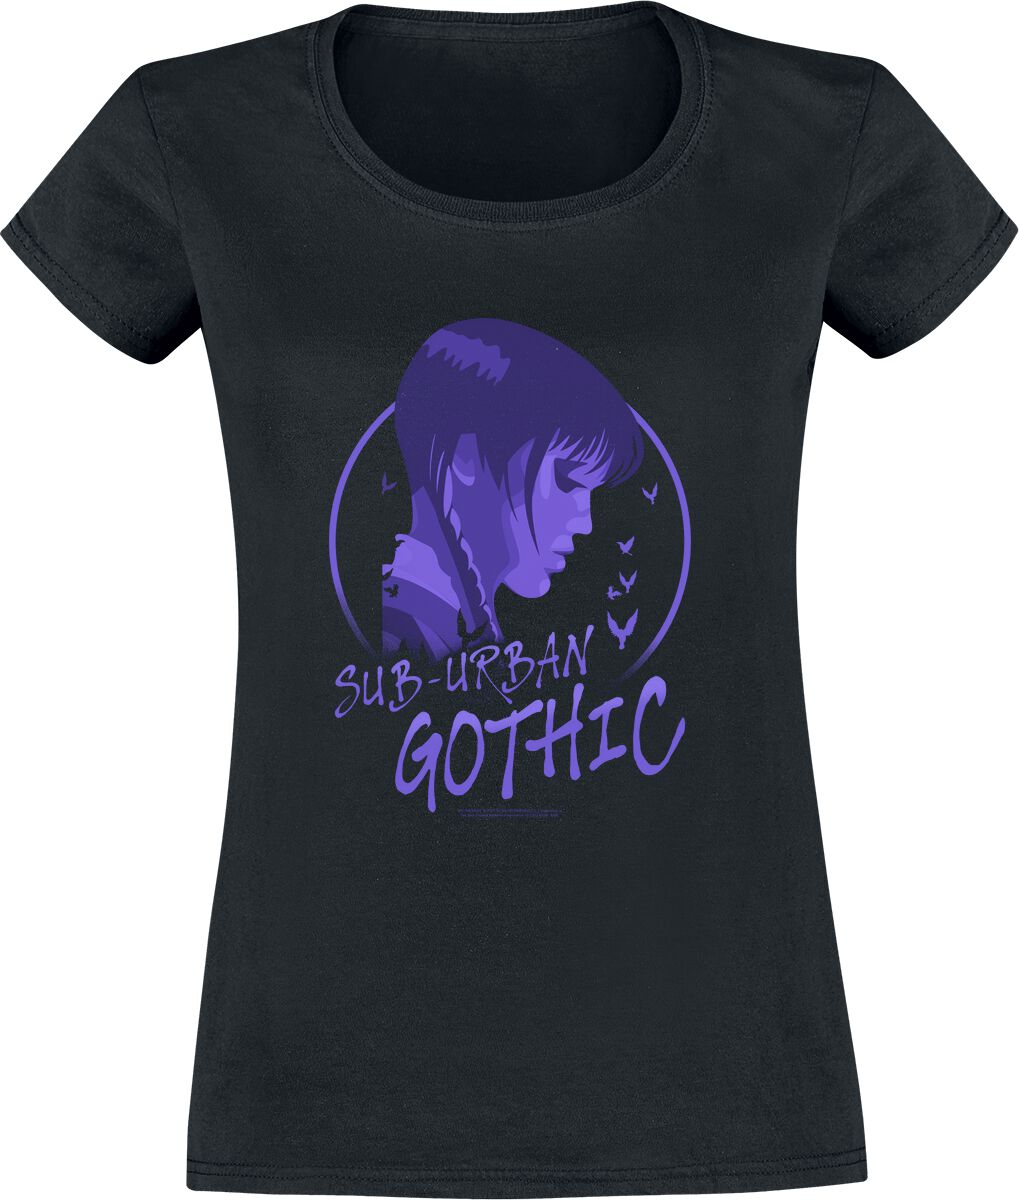 T-Shirt Manches courtes de Wednesday - Sub Urban Gothic - S à XXL - pour Femme - noir